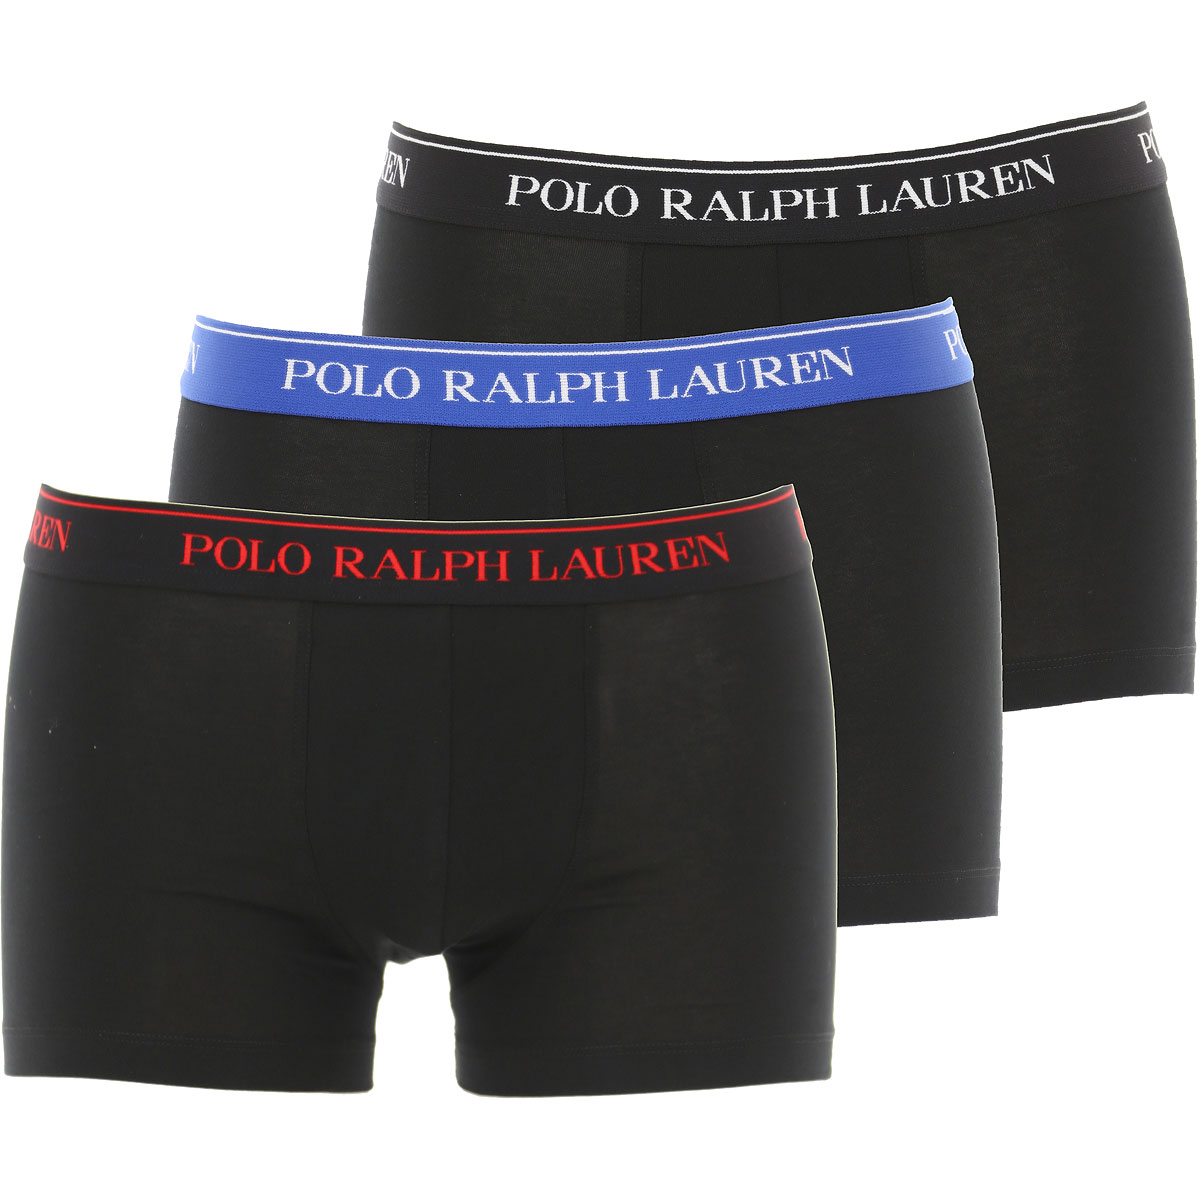 Ralph Lauren Boxer Shorts für Herren, Unterhose, Short, Boxer Günstig im Sale, 3 Pack, Schwarz, Baumwolle, 2017, L L M M S S XL XL